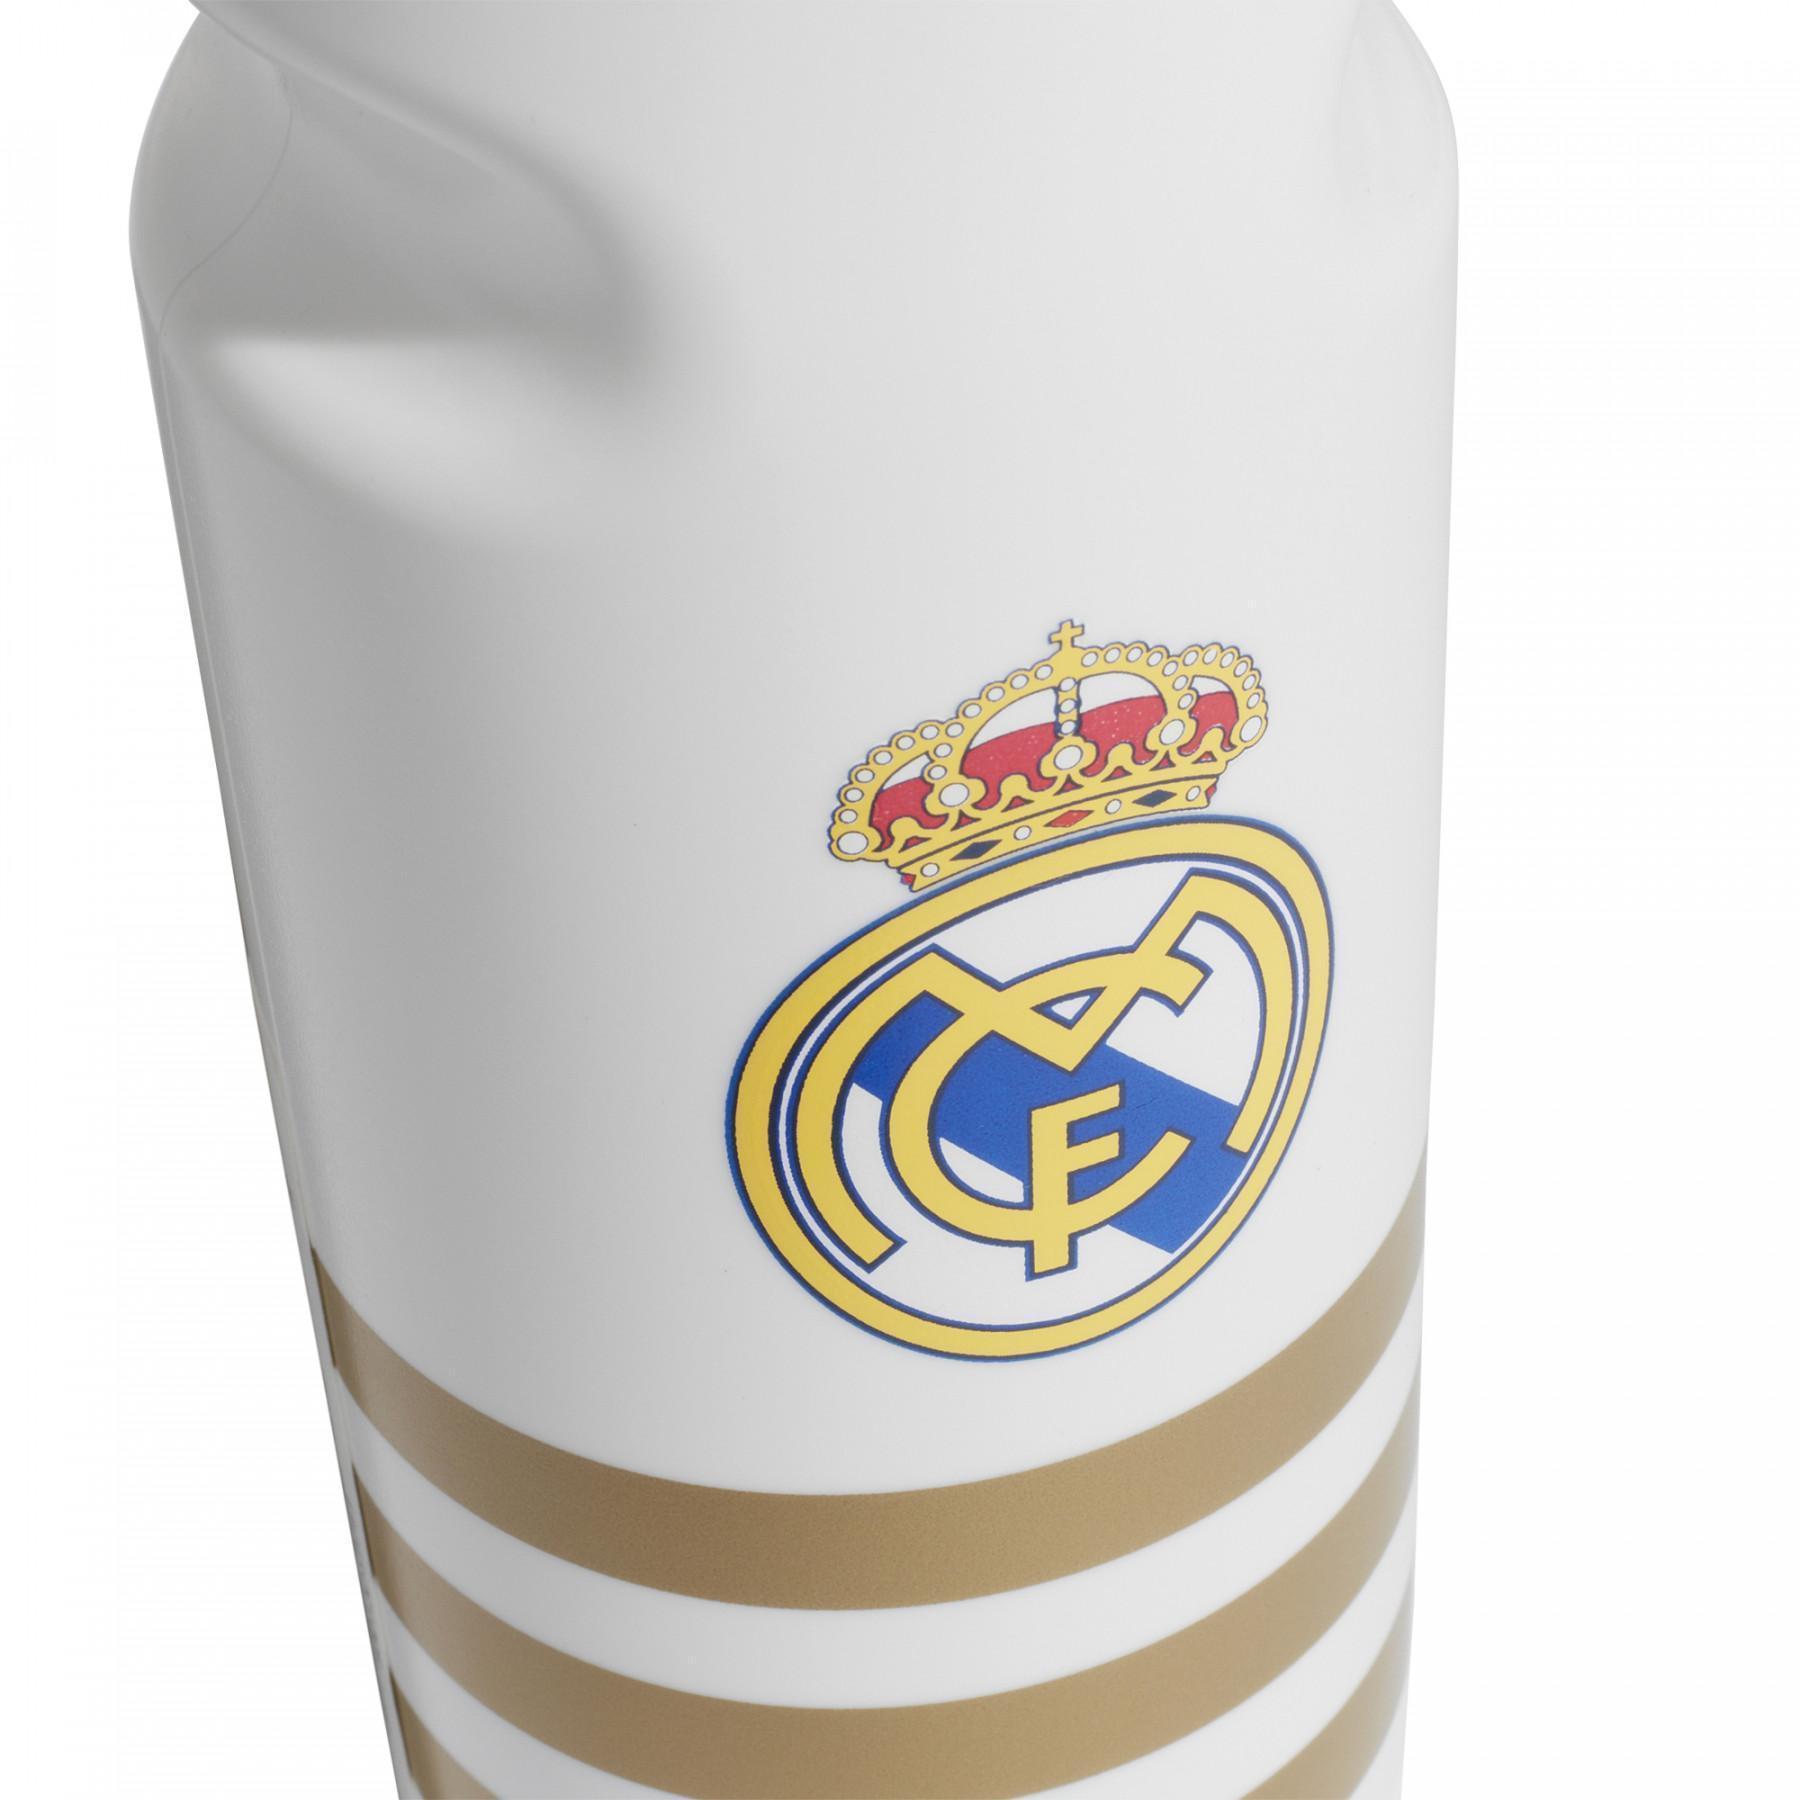 Flaska Real Madrid